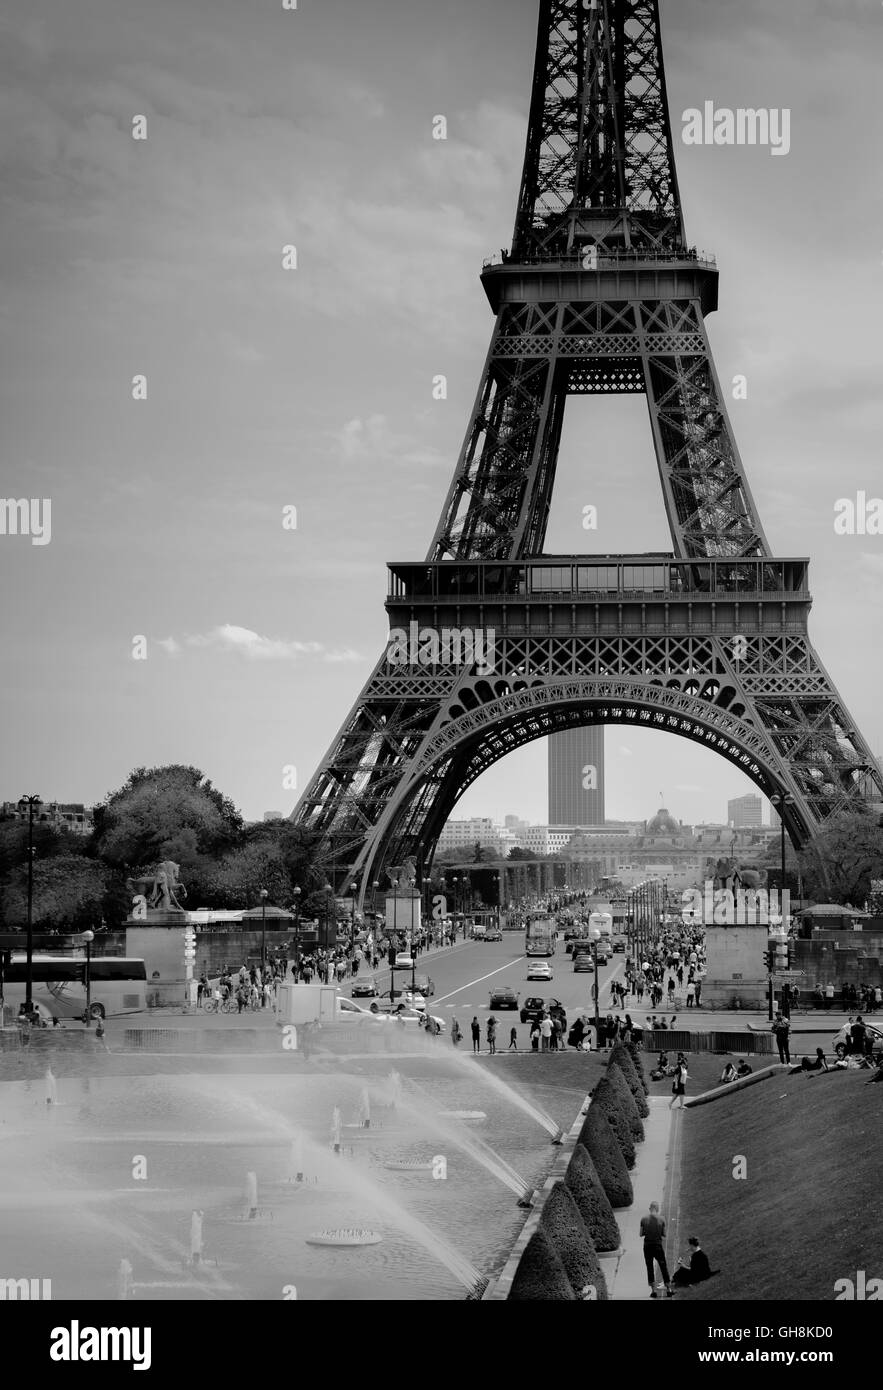 Mai 2016 : les touristes profiter de temps de printemps autour de la Tour Eiffel avant de la saison touristique d'été et encombré de vagues de chaleur Banque D'Images